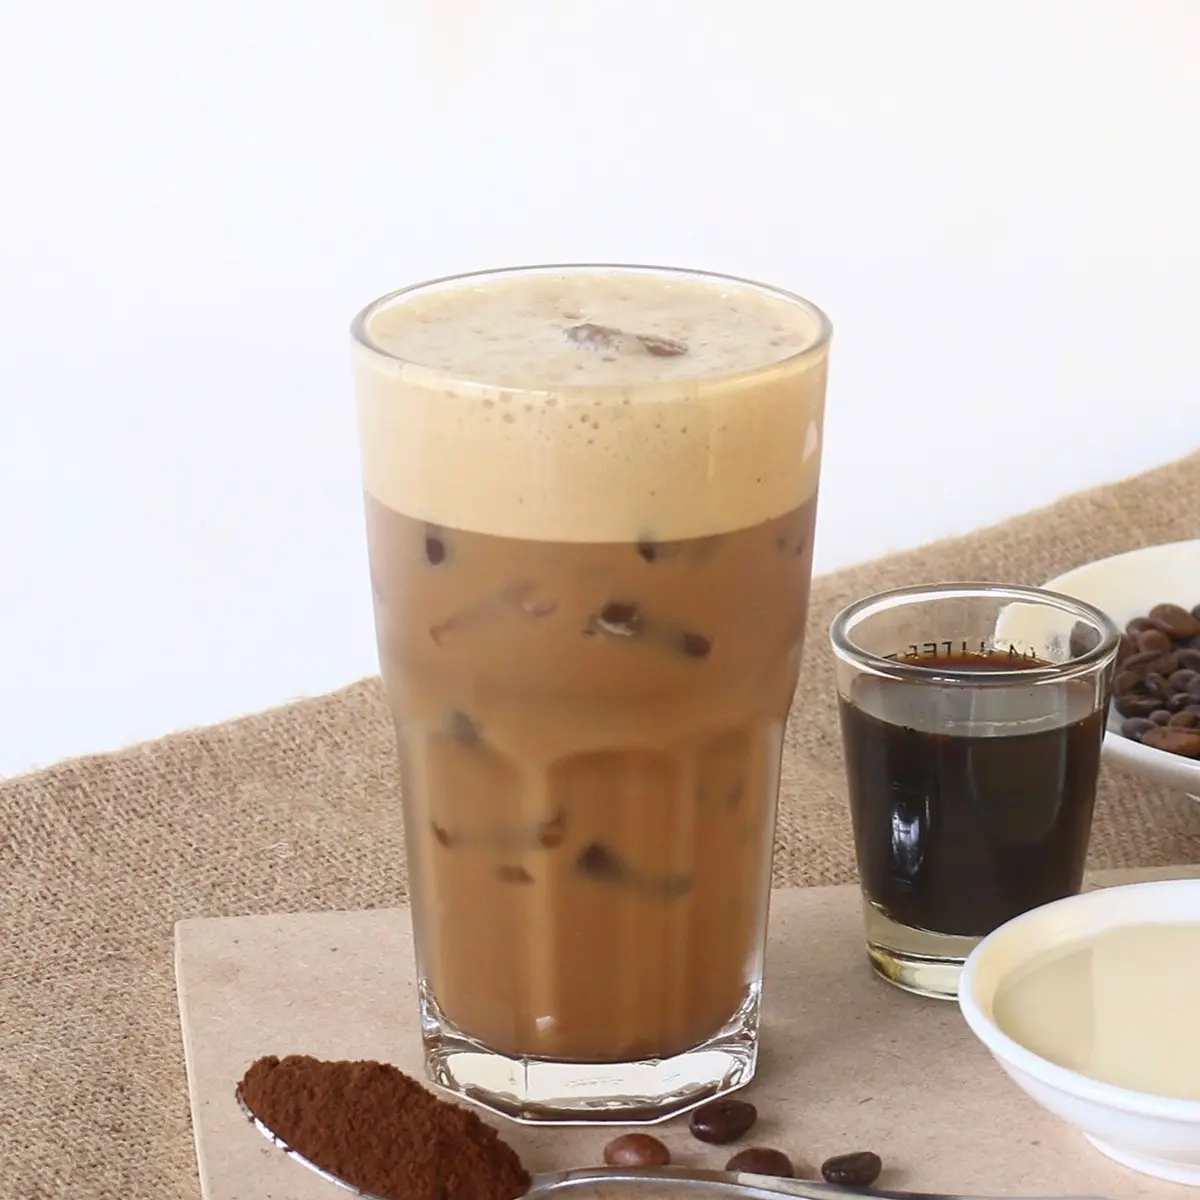 Keurig’s Vietnamese Milky Iced Coffee Recipes